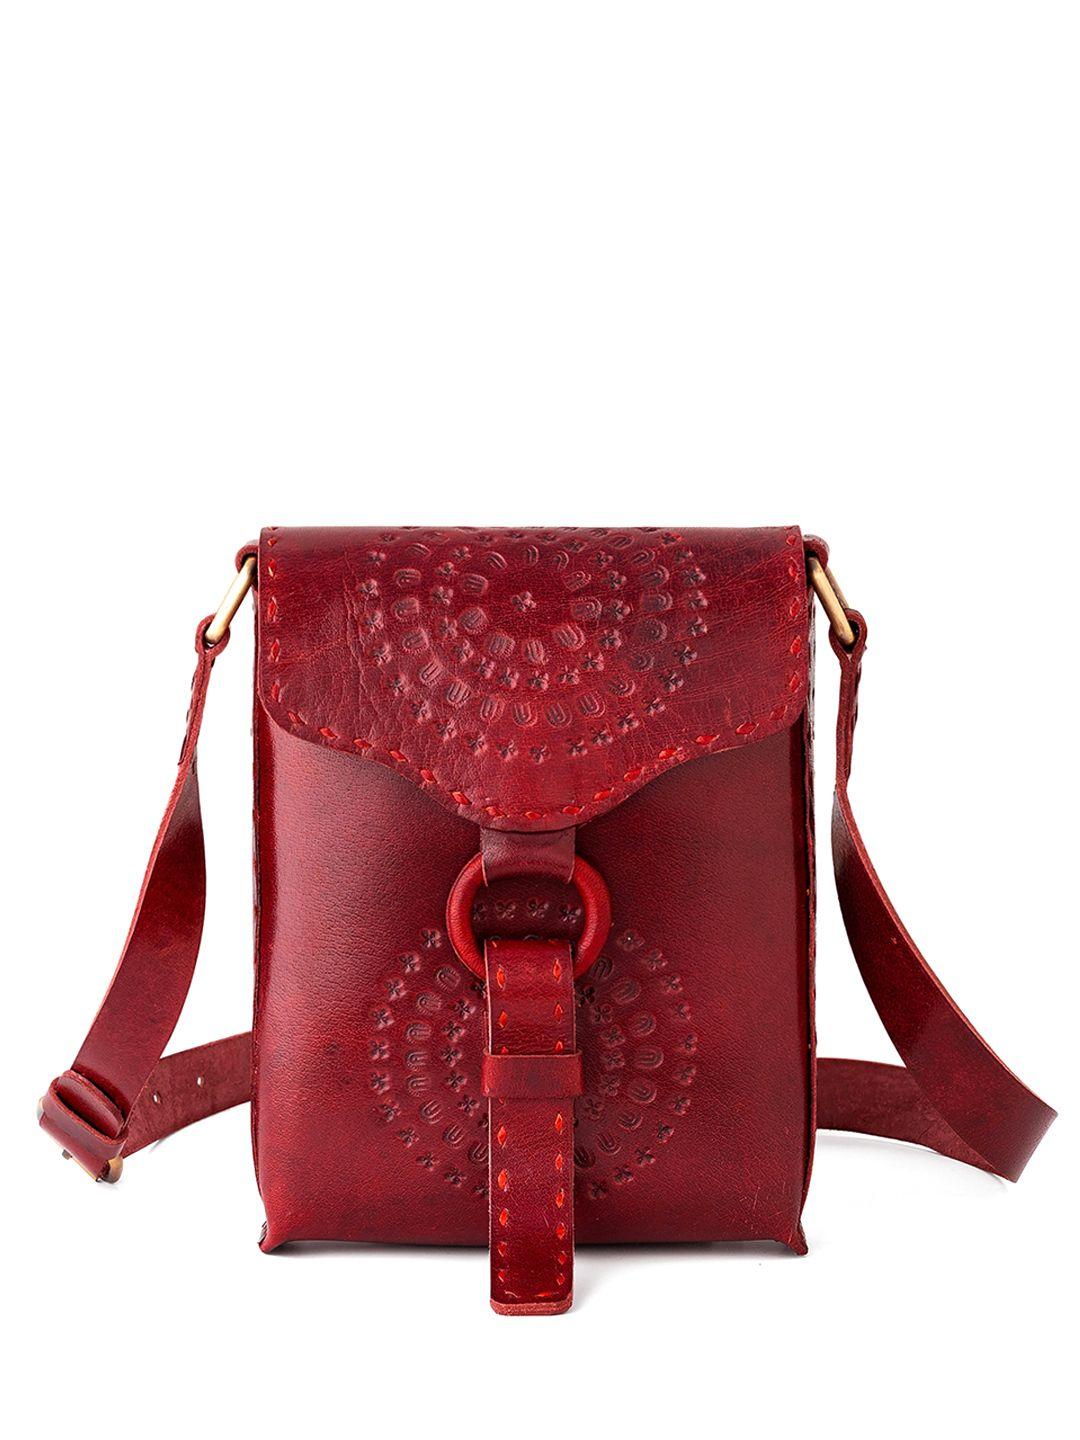 goatter textured structured leather sling bag